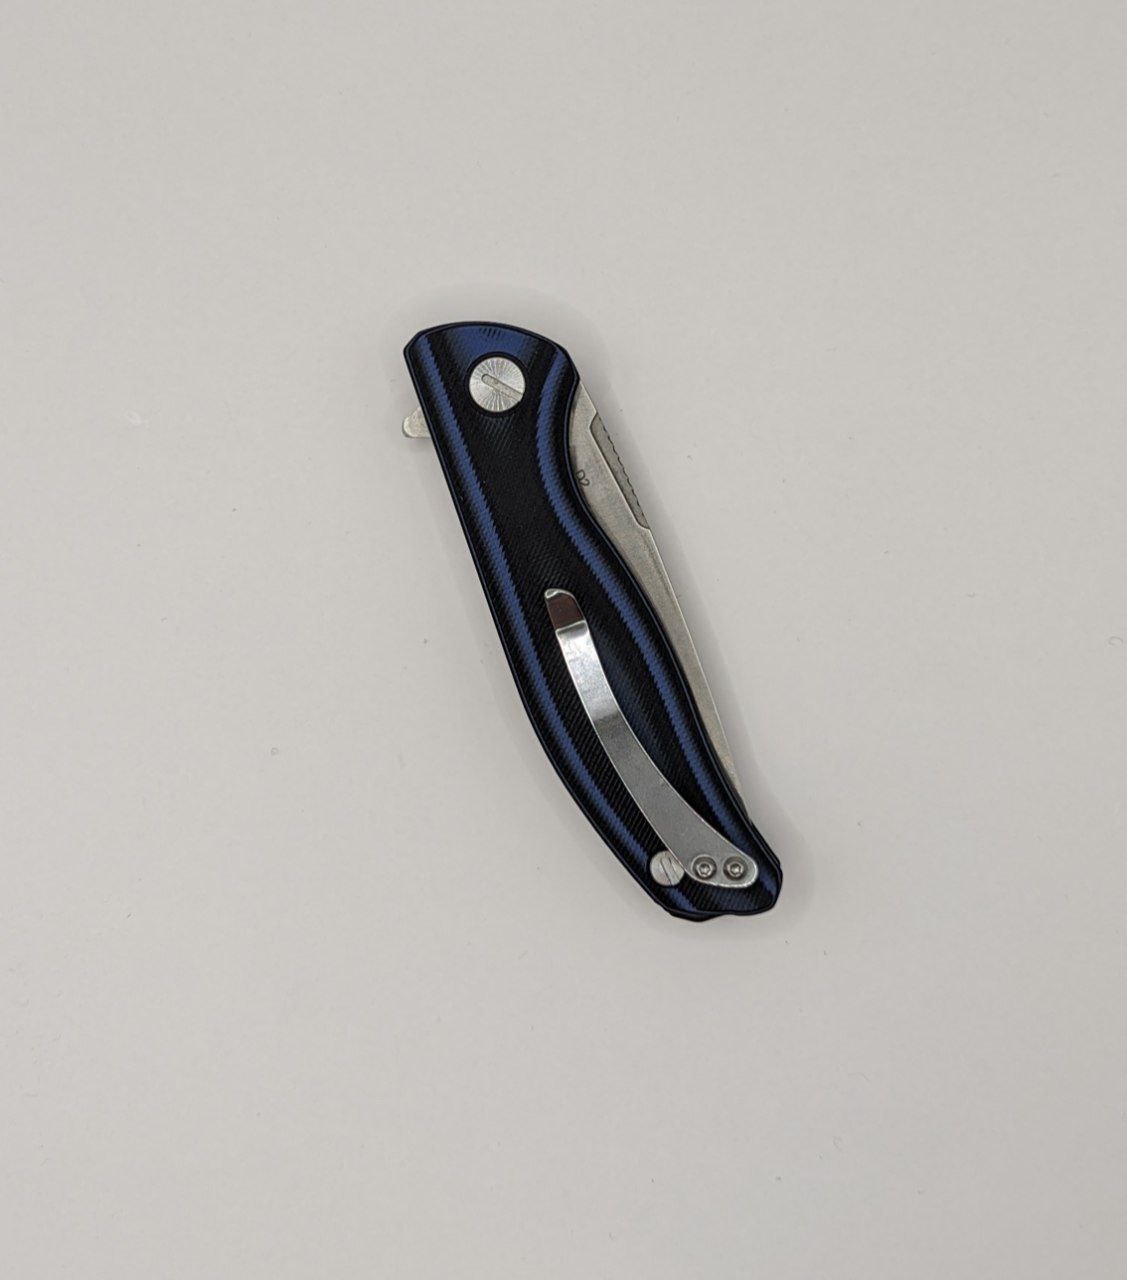 Нож складной Shirogorov D2 реплика Blue-Black